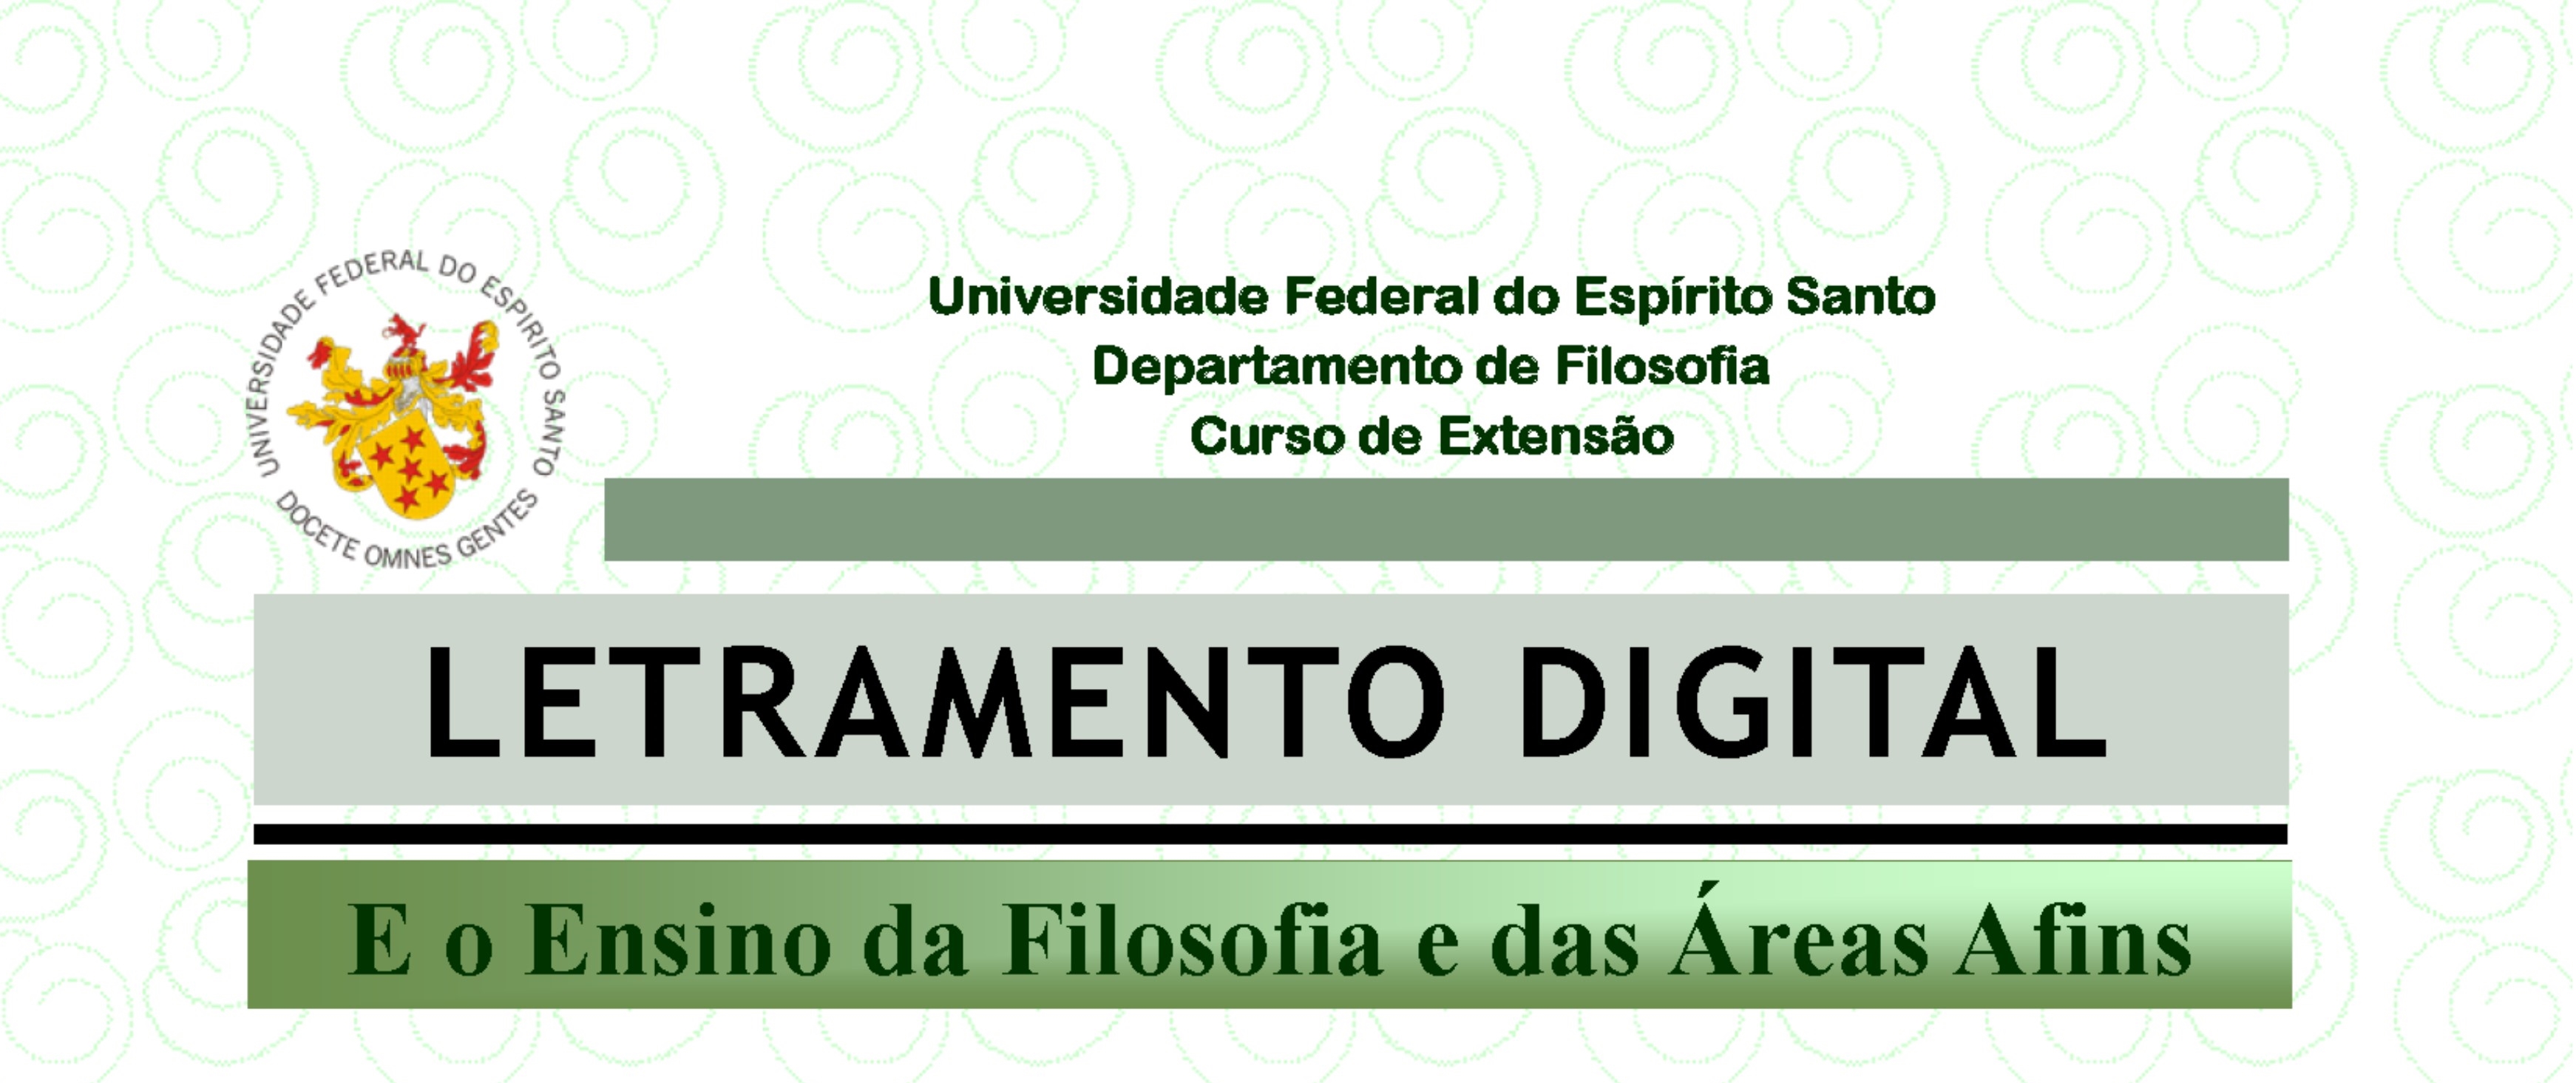 Informe da Educação: curso de extensão pela UFES (Letramento Digital e o Ensino da Filosofia e das Áreas Afins) com início no dia 12 de março